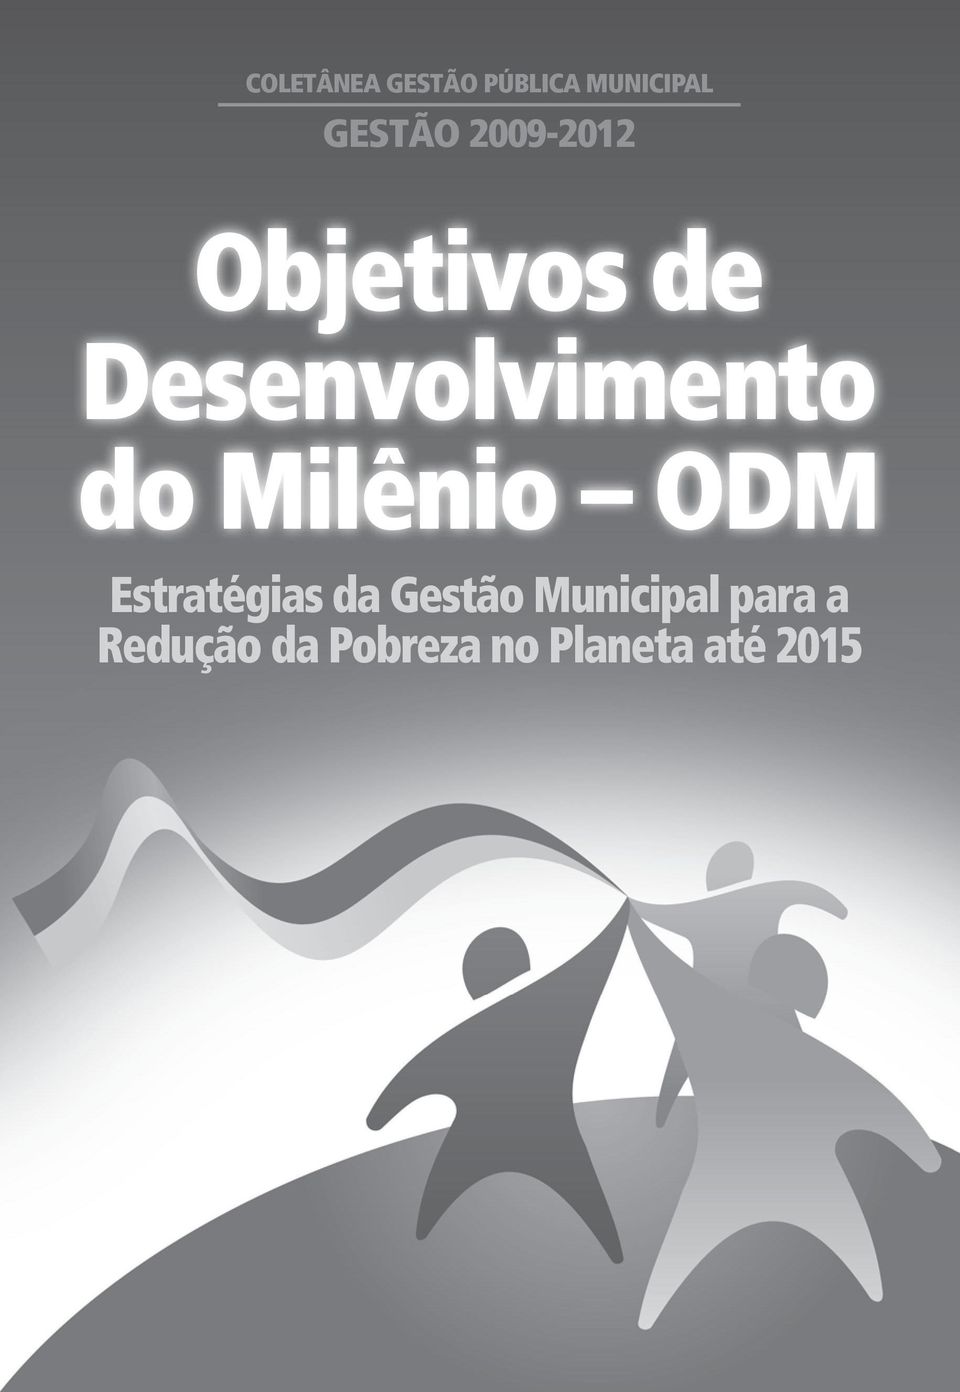 Milênio ODM Estratégias da Gestão Municipal